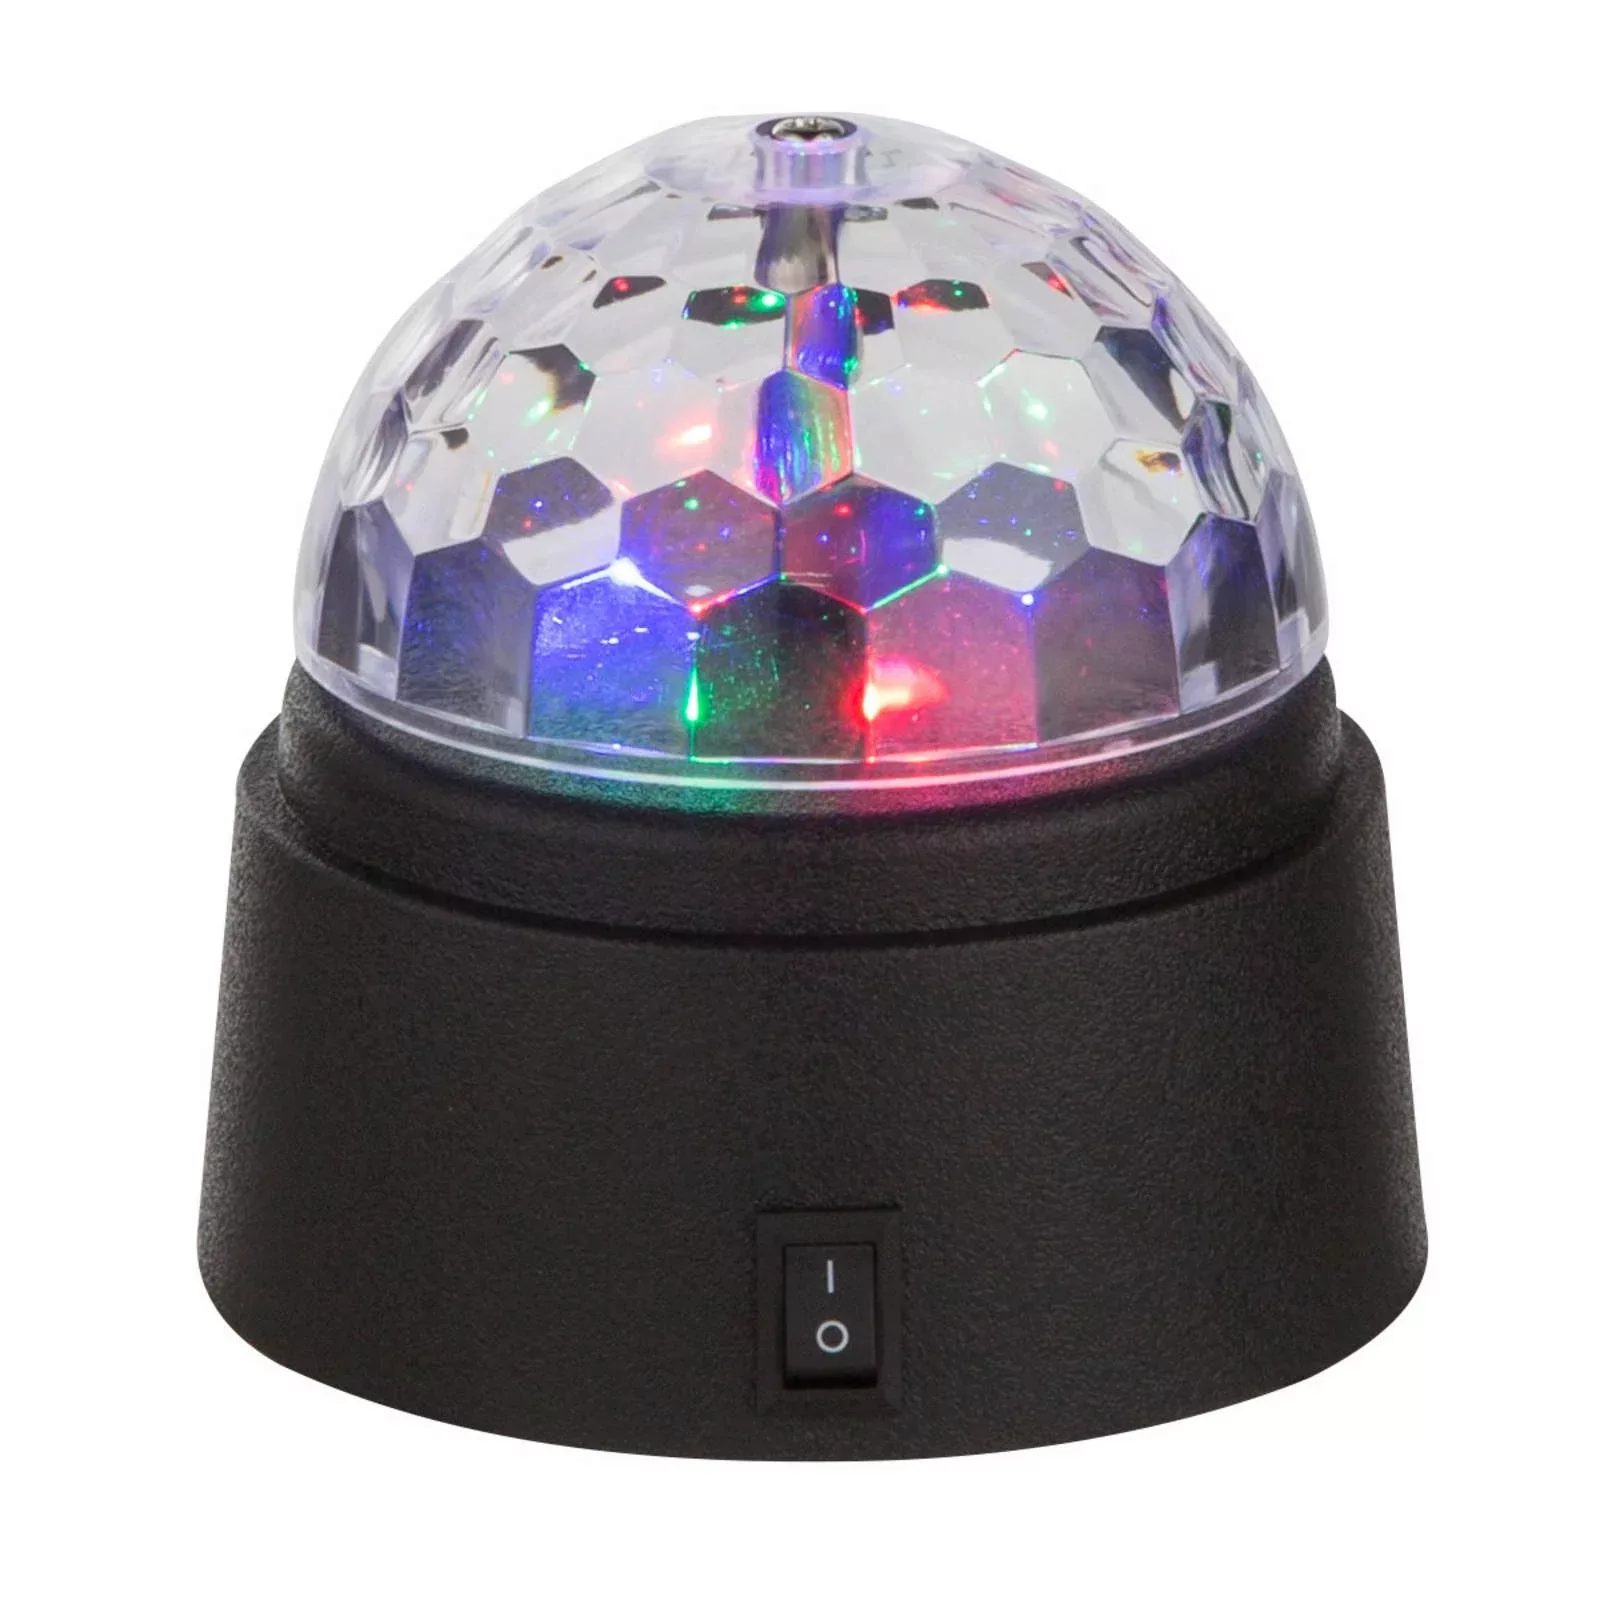 LED-Tischdekoleuchte Disco mit buntem Licht günstig online kaufen